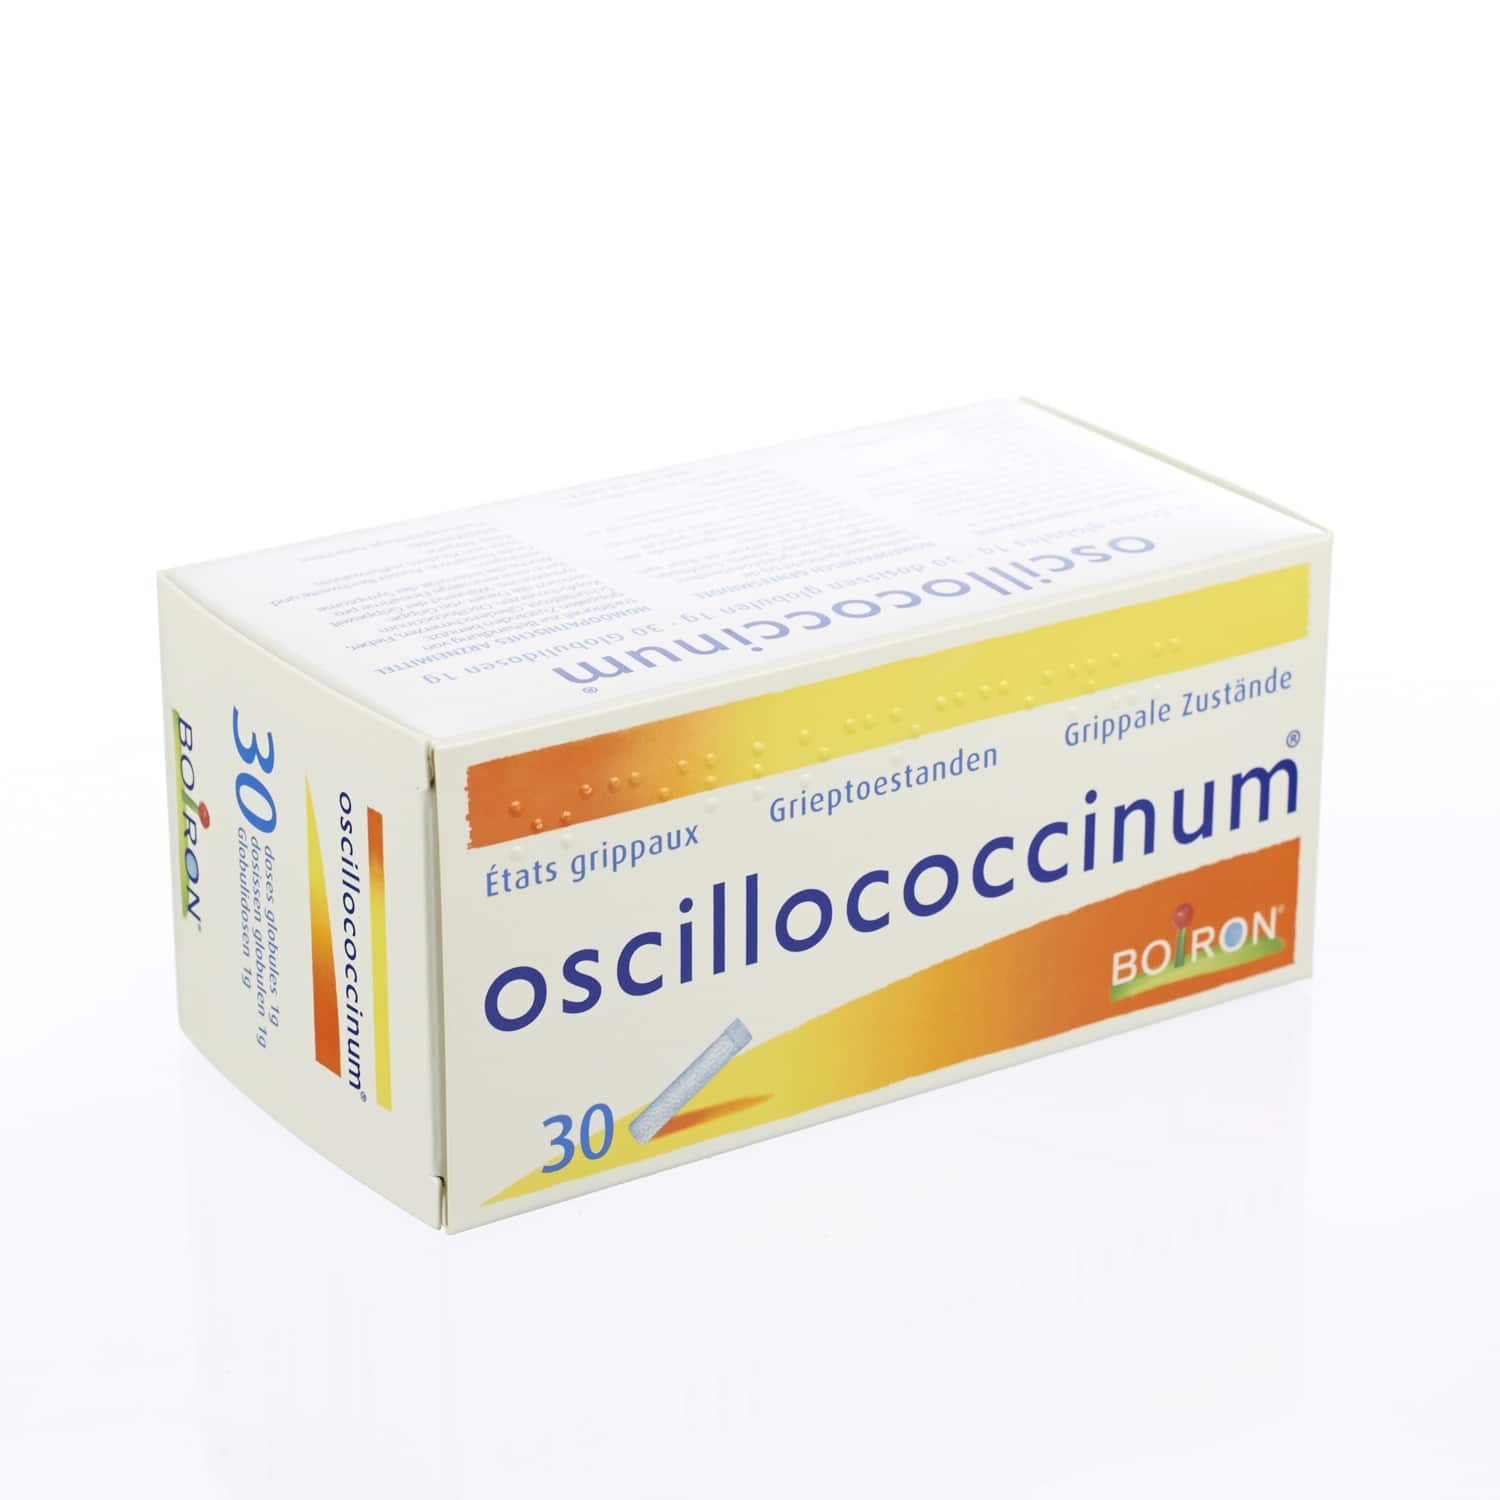 Boiron Oscillococcinum